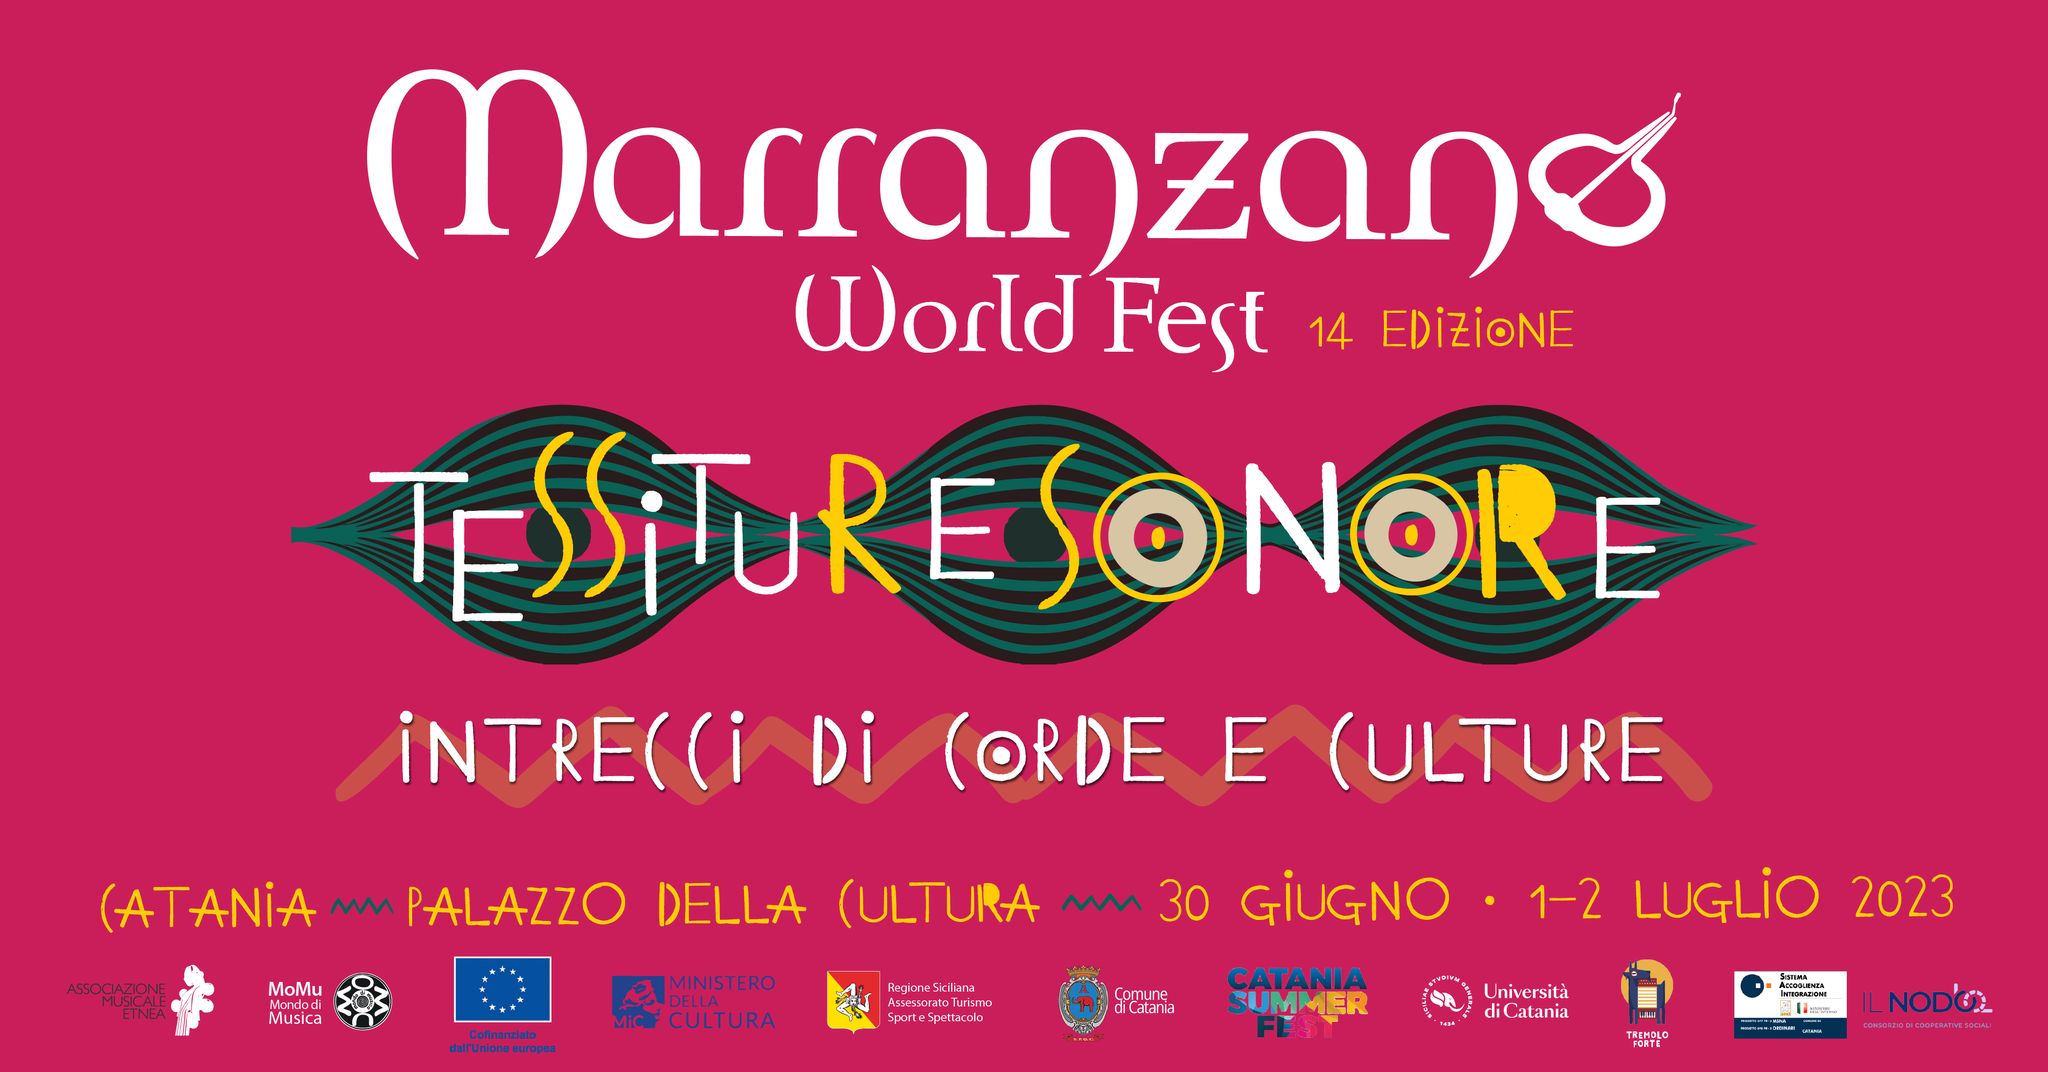 Marranzano World Fest 2023